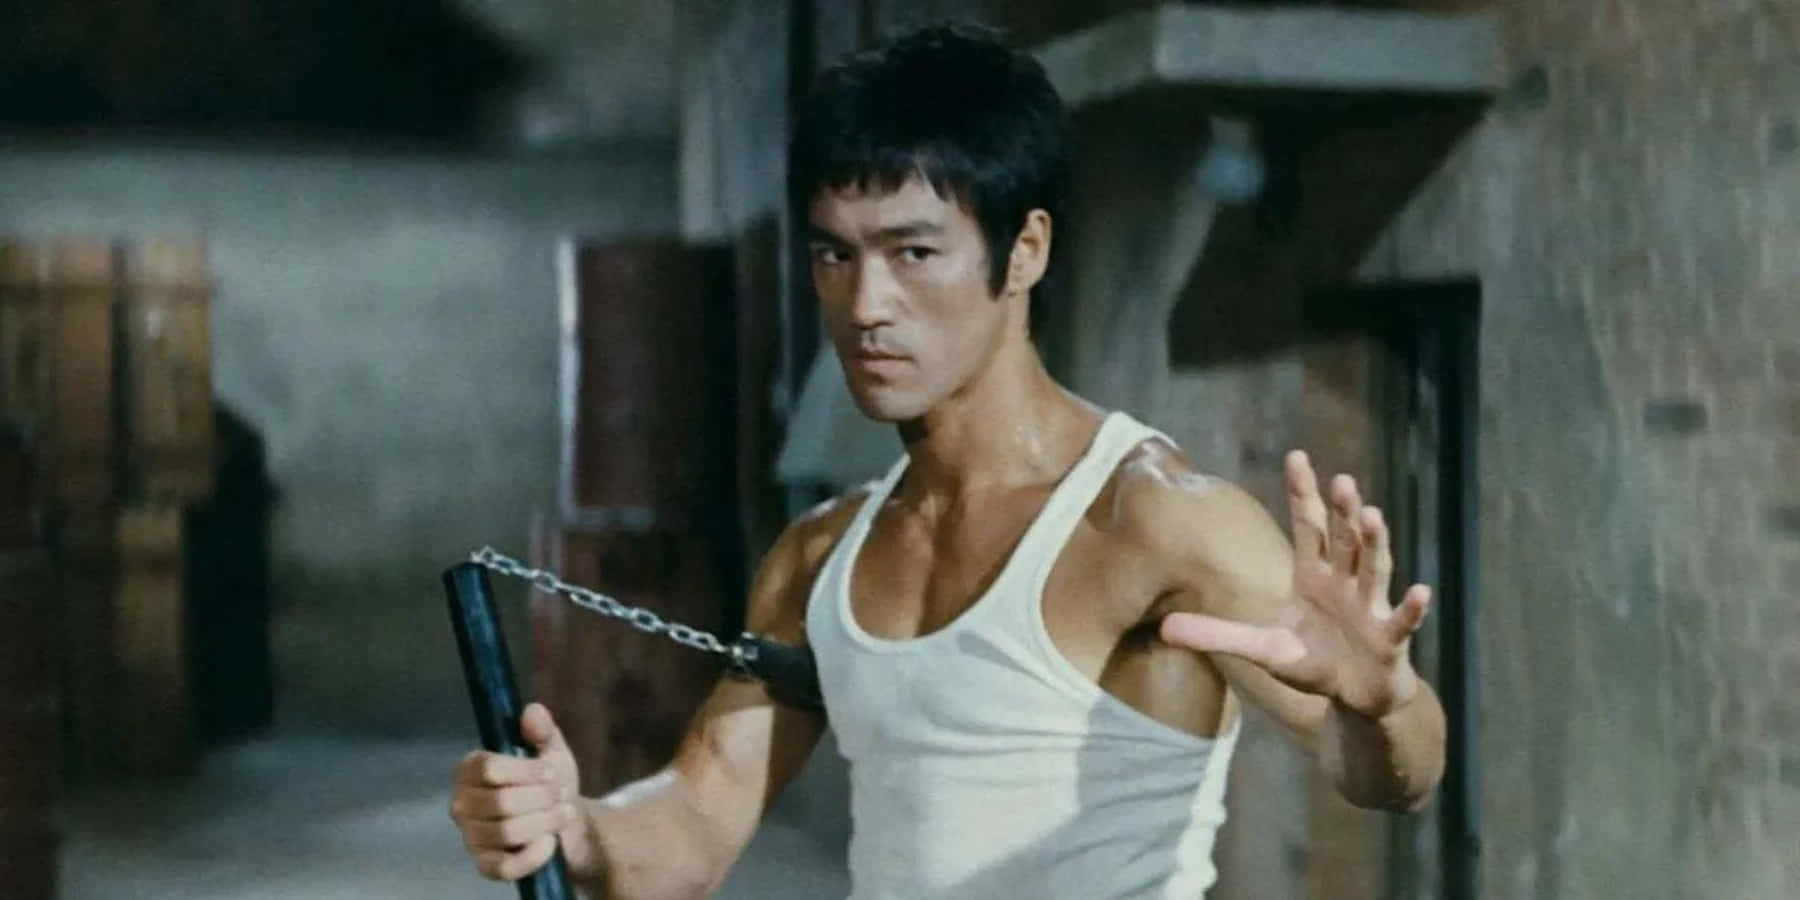 The Legendary Bruce Lee